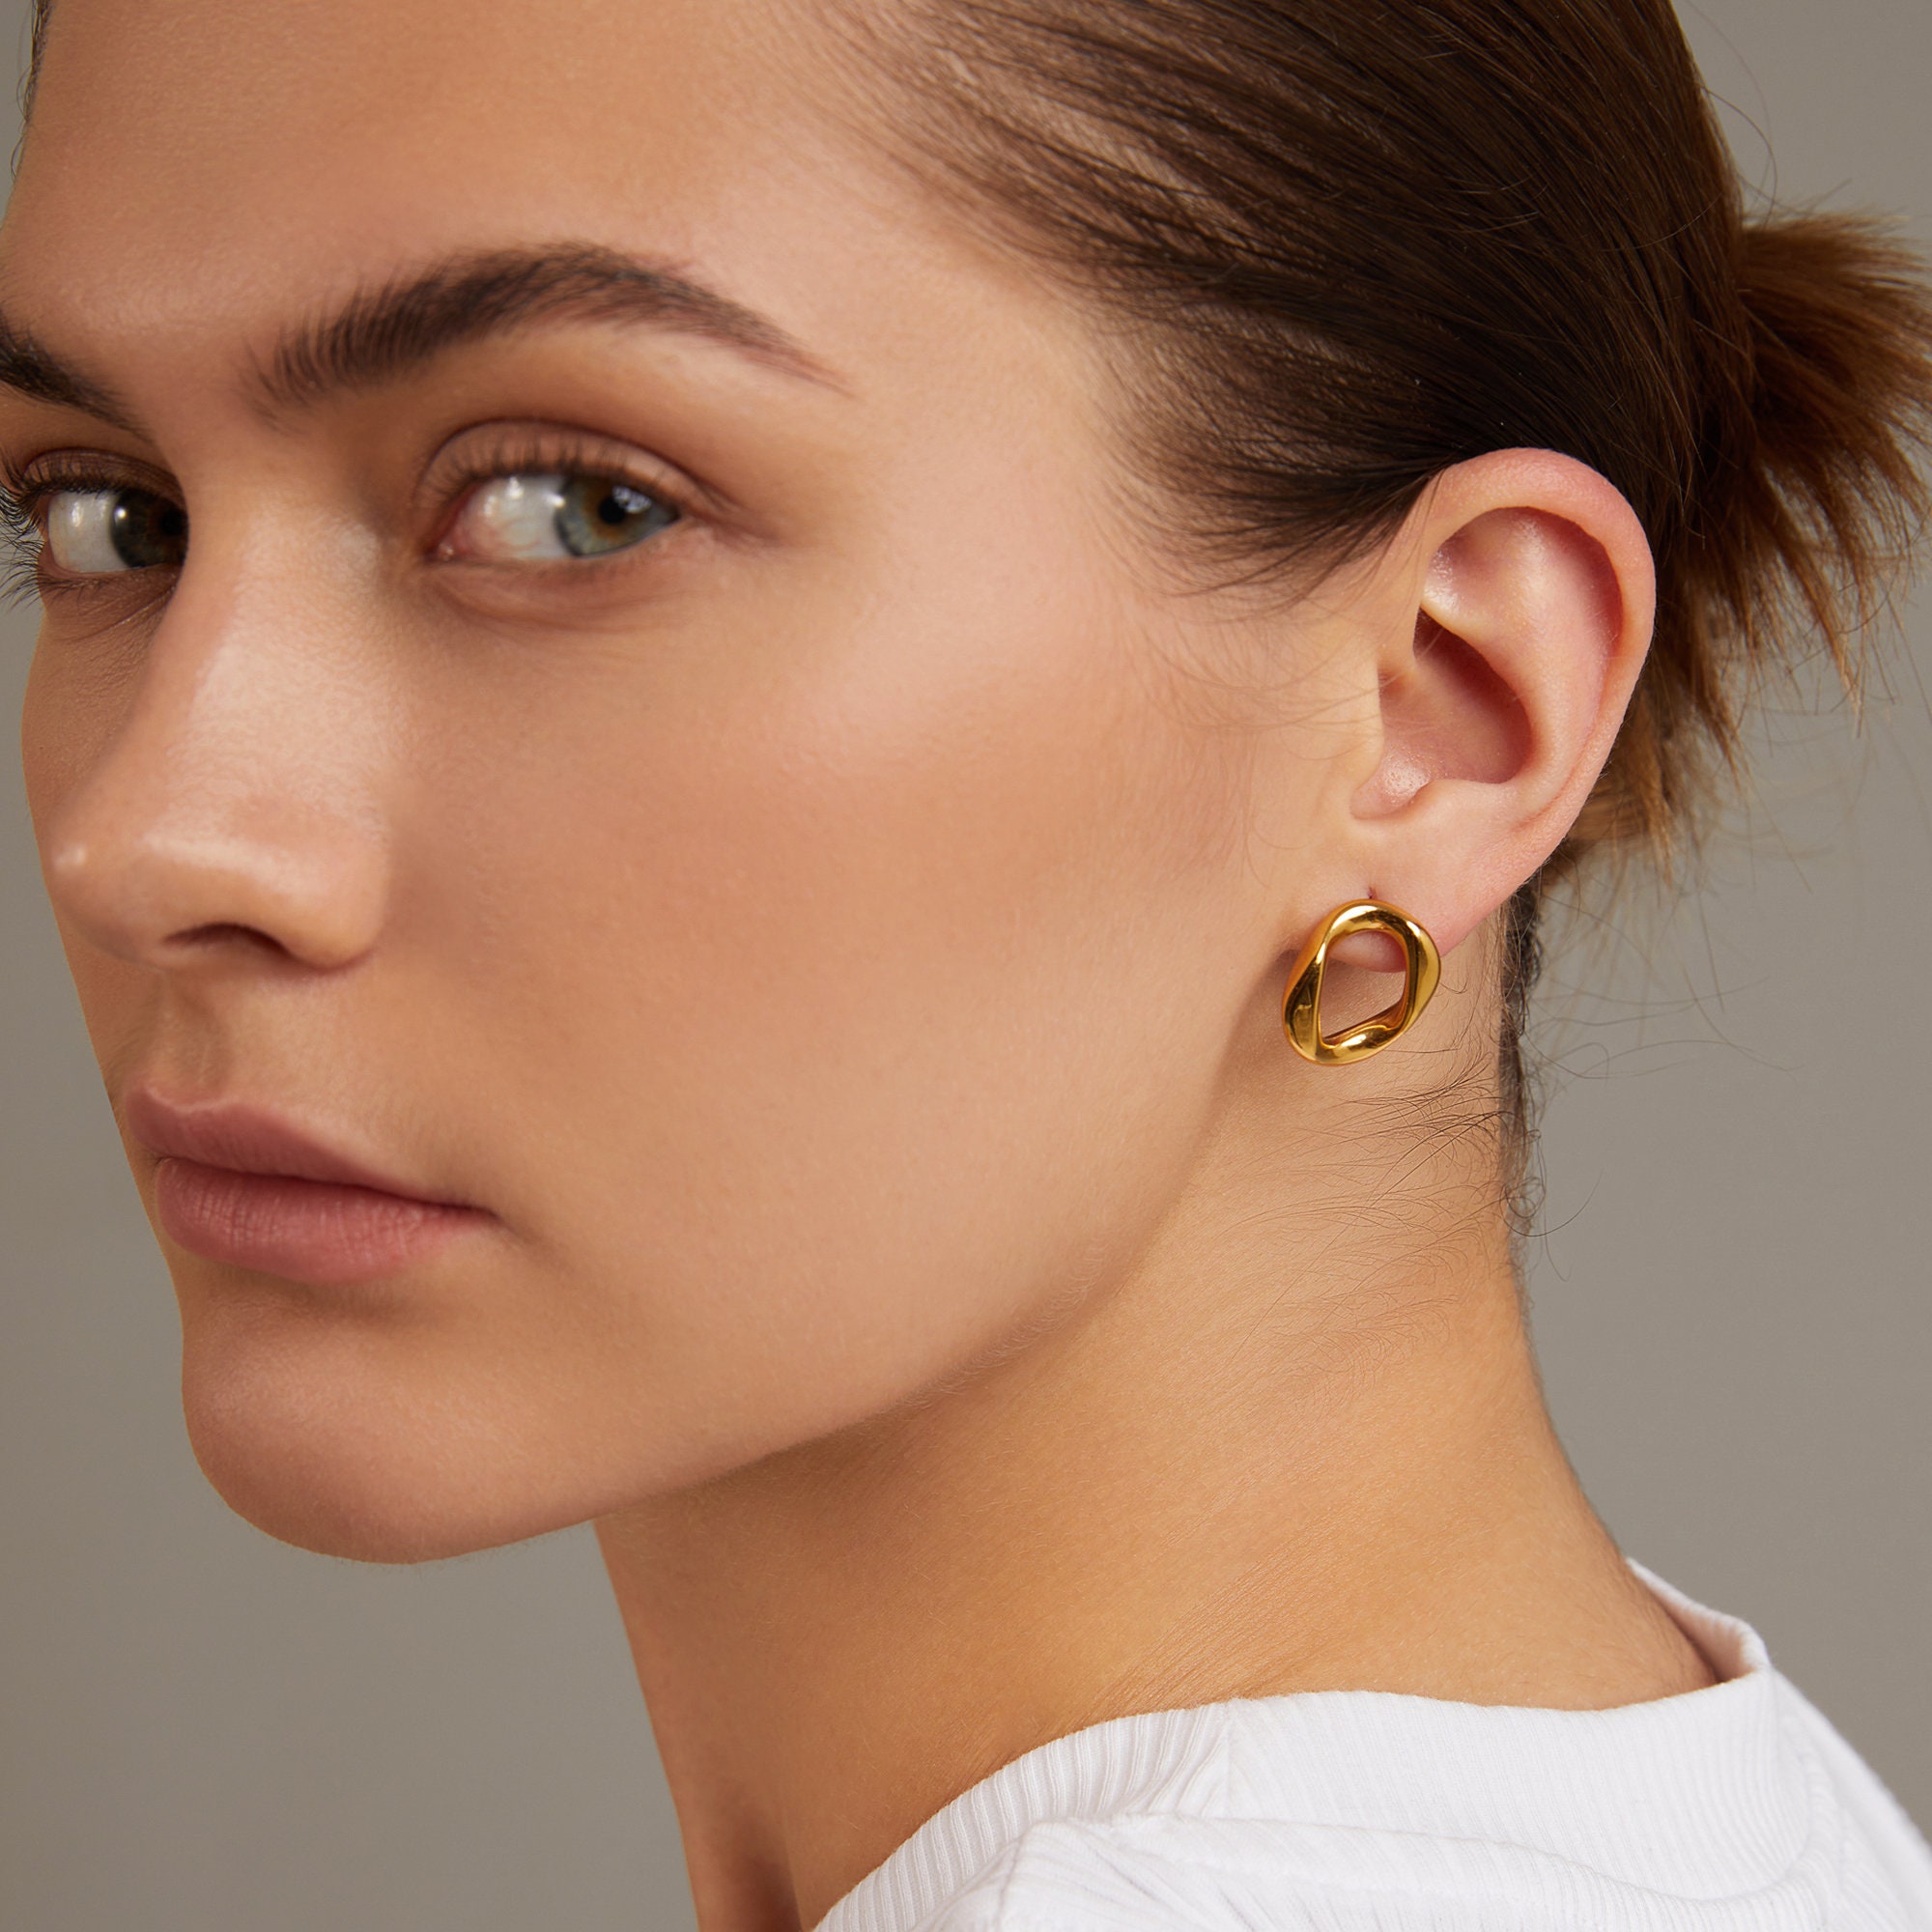 18K Gold Locker Hoop Earrings INS POPULAR EARRINGS  Etsy UK  Popular  earrings Etsy earrings Earrings